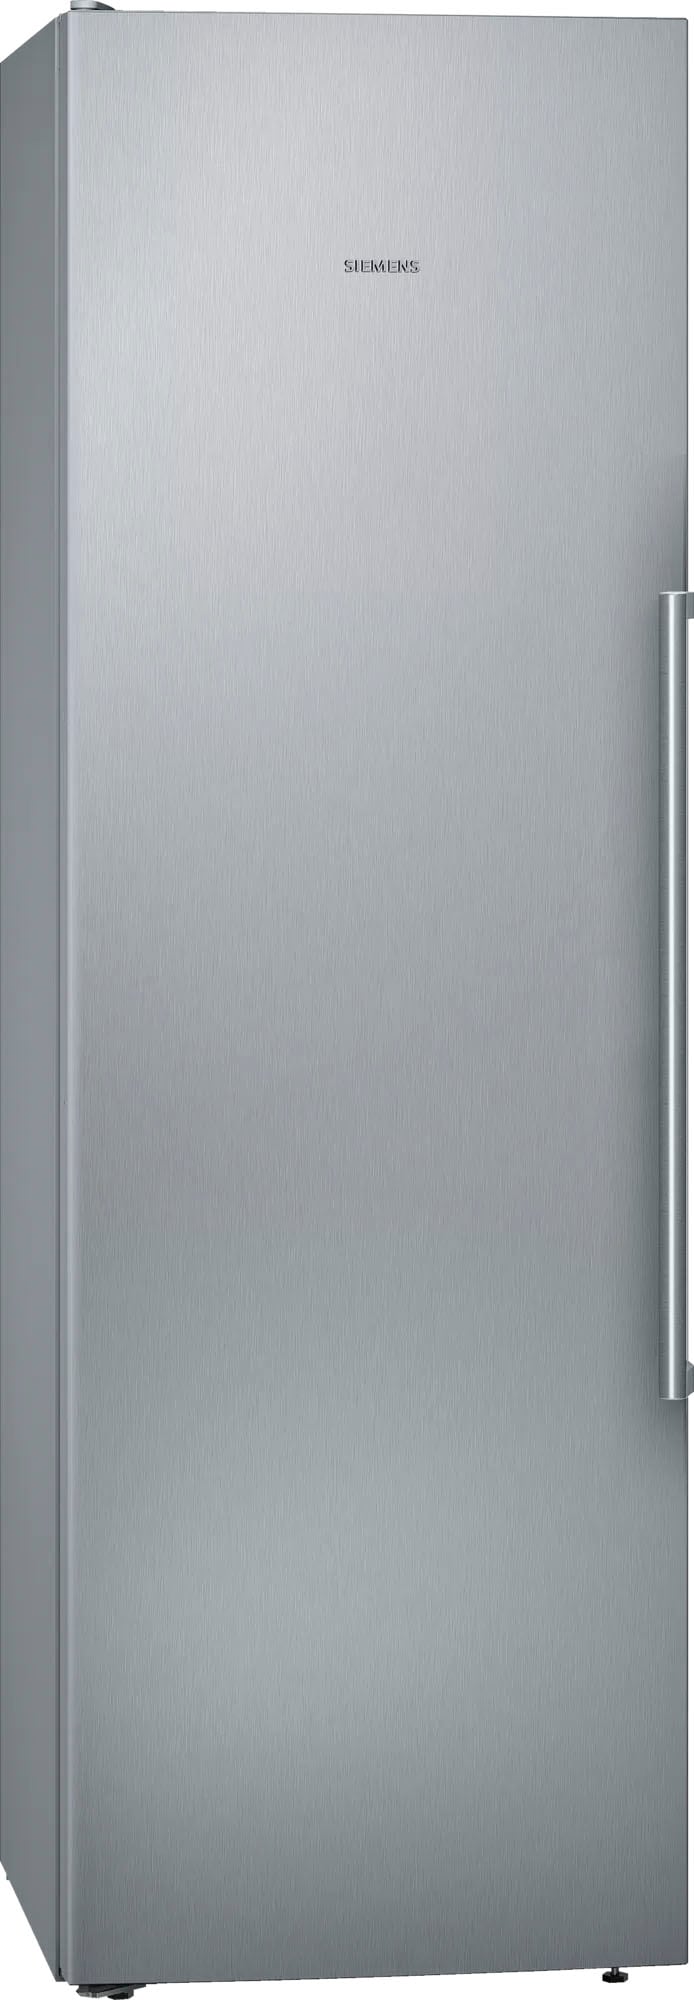 SIEMENS Kühlschrank »KS36FPIDP«, KS36FPIDP, 186 cm hoch, 60 cm